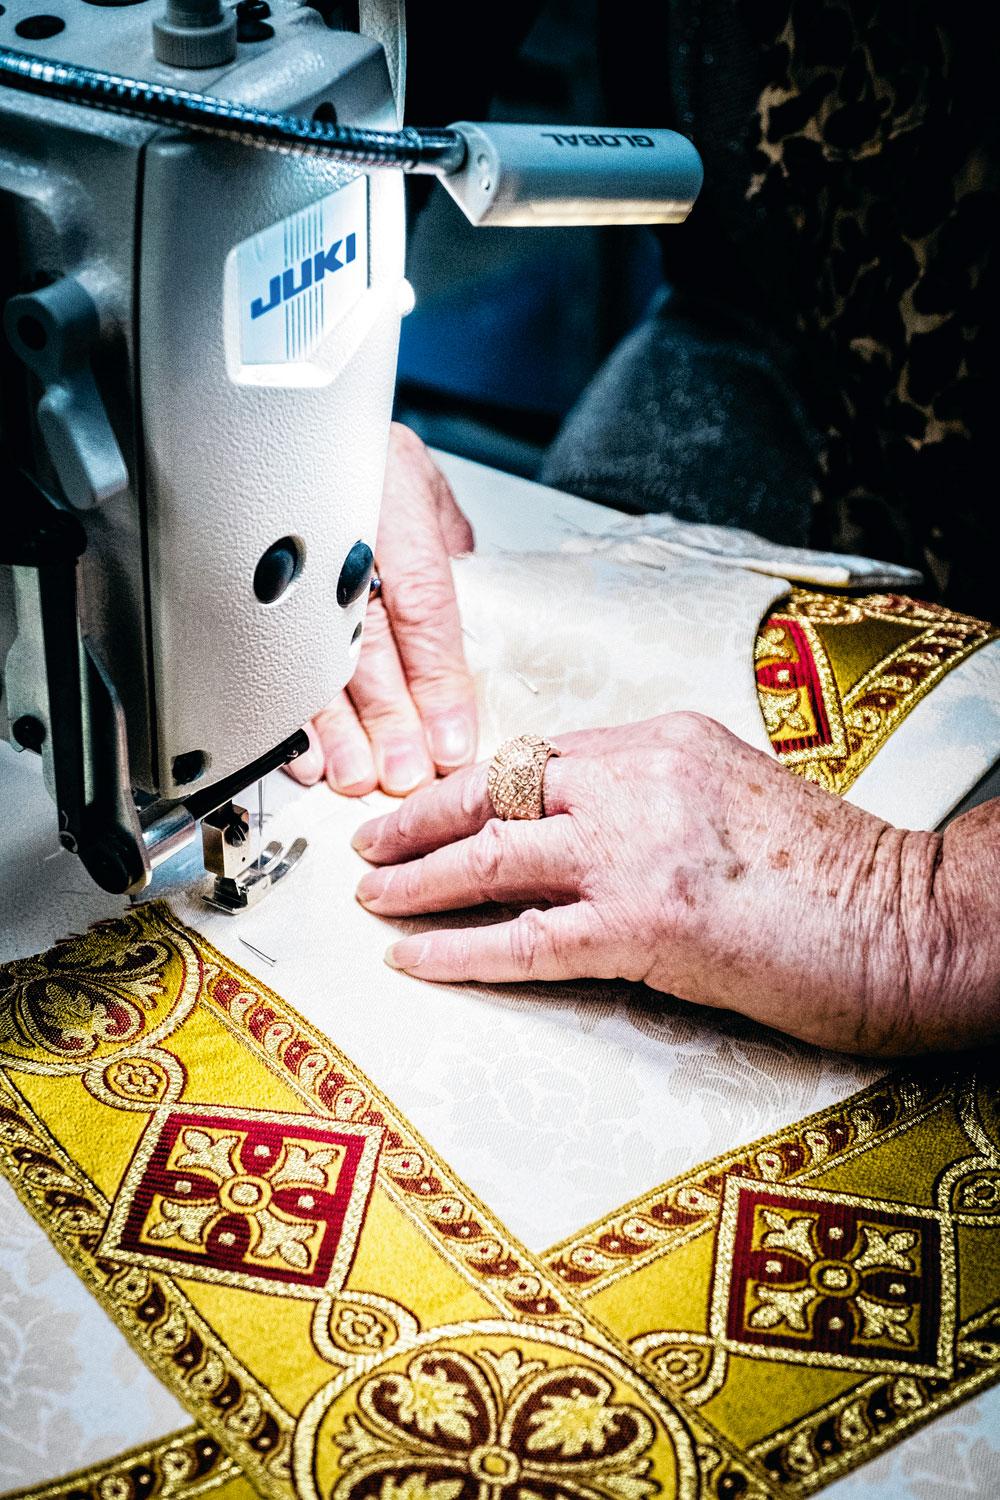 Dit Belgisch atelier maakt ook de kazuifels voor de paus op maat.